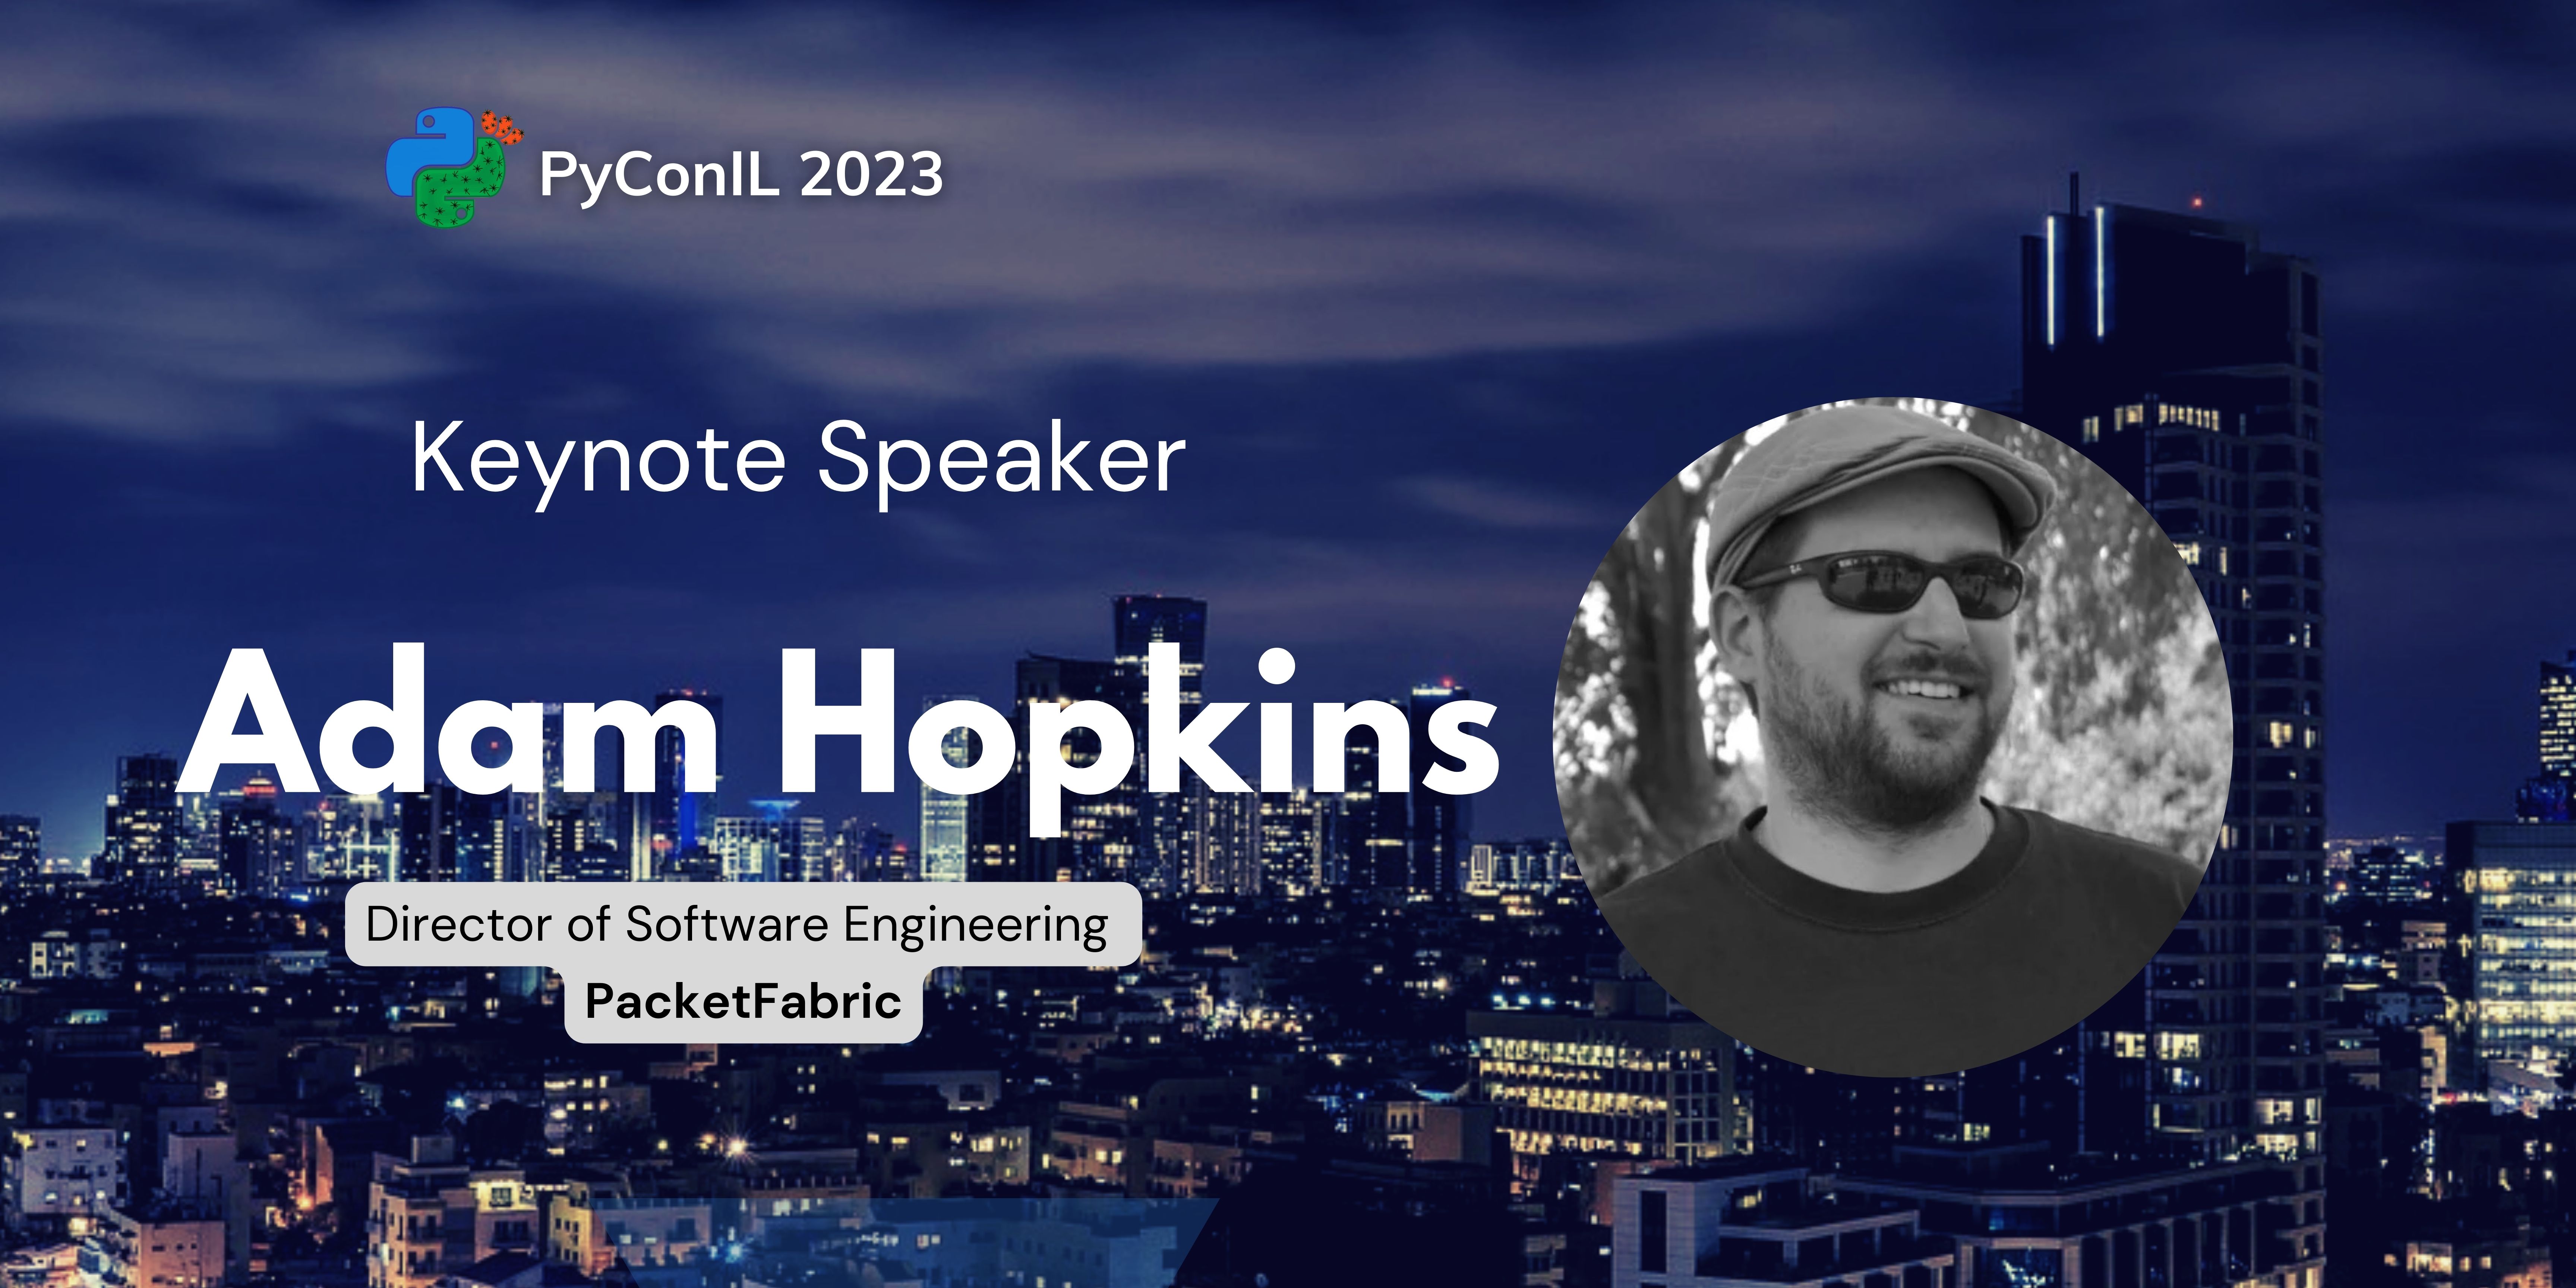 Our Keynote Speaker: Adam Hopkins